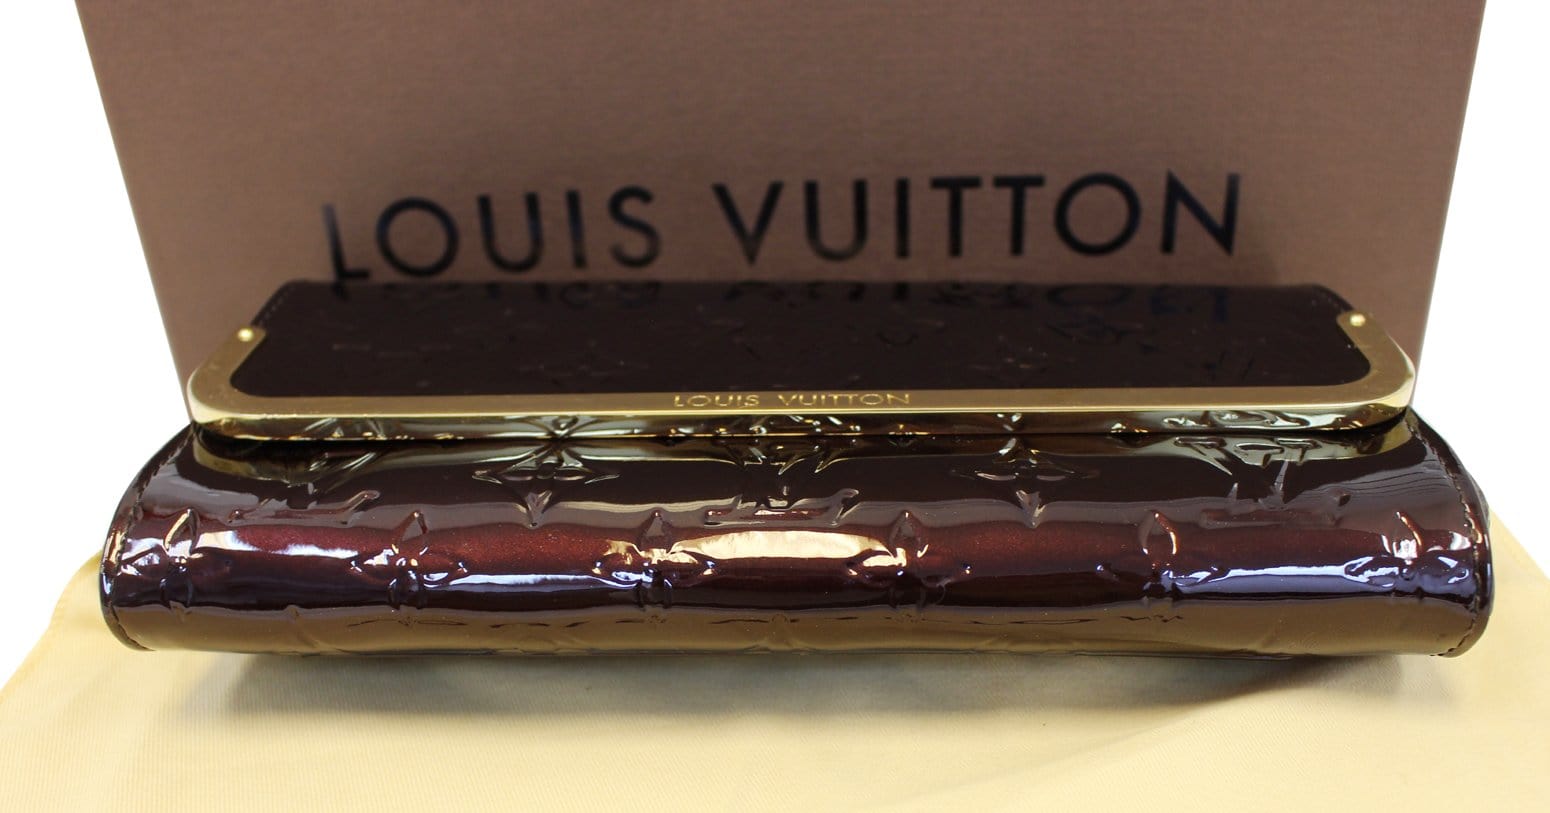 Authentic Louis Vuitton Monogram Vernis Rossmore Bag